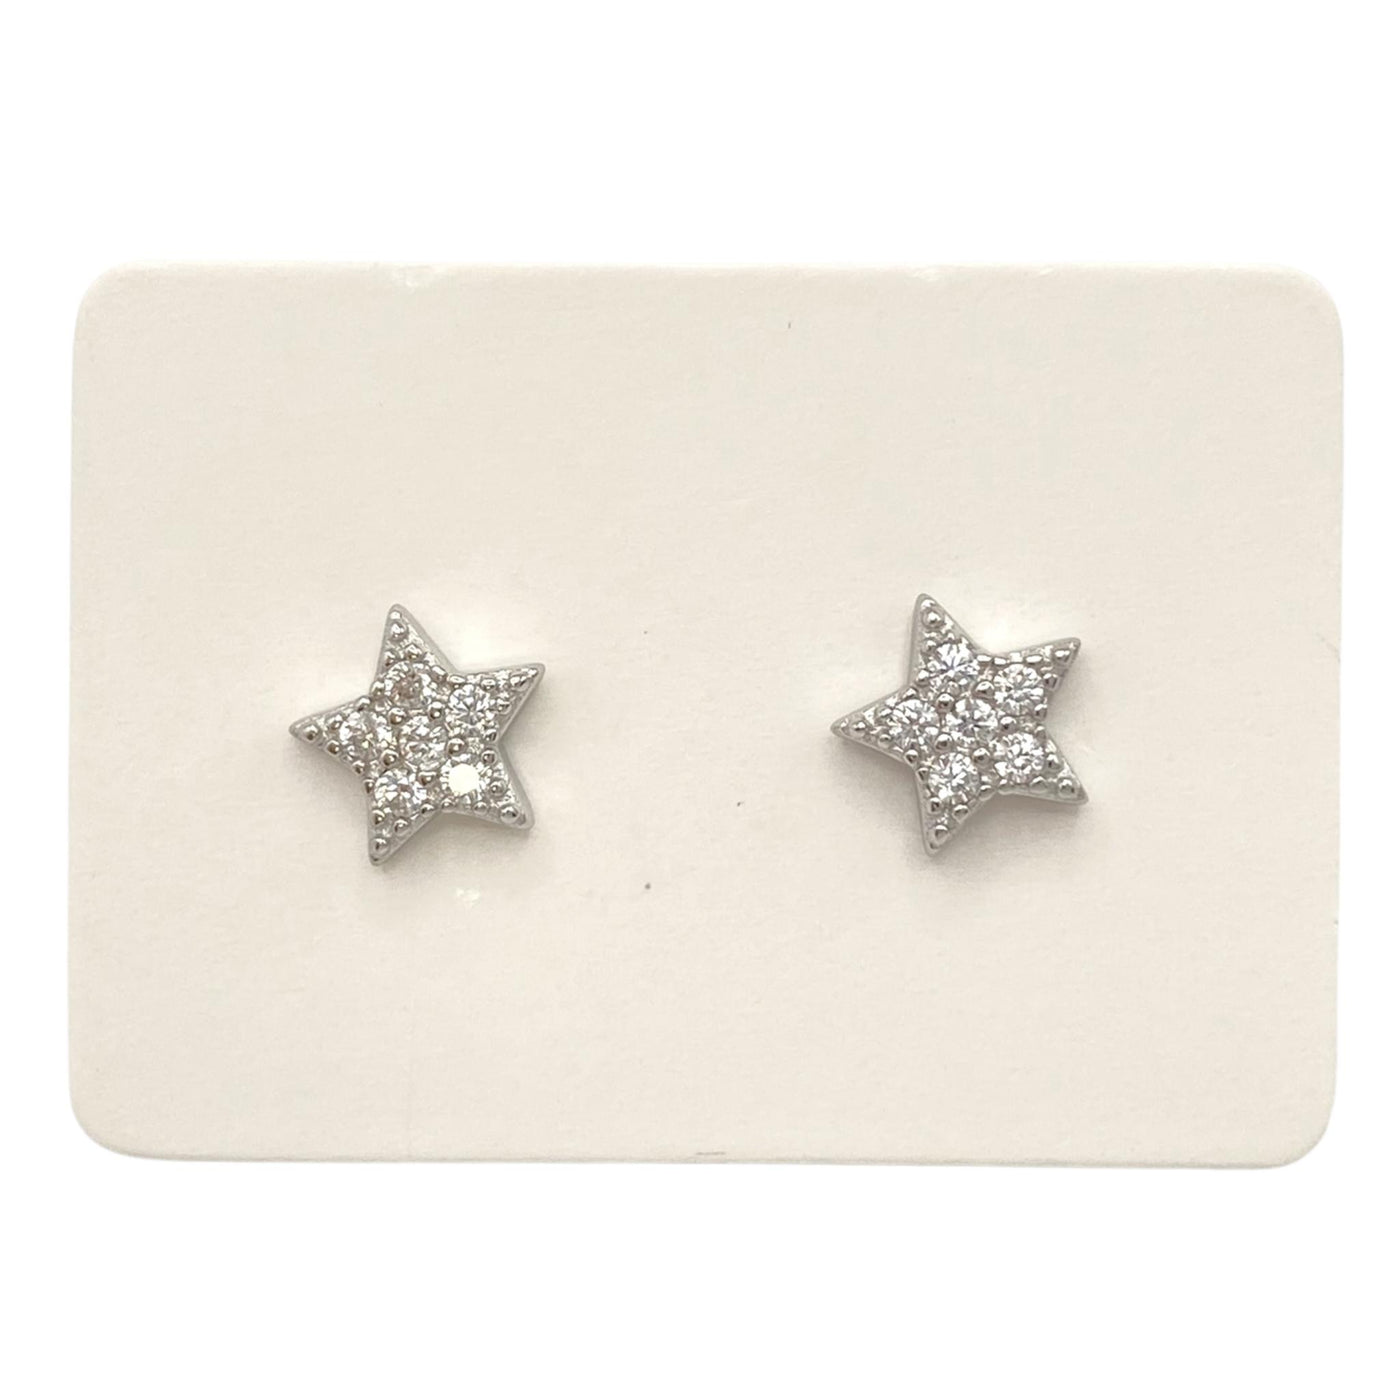 Pack of 5 silver stud star earrings - 7 mm